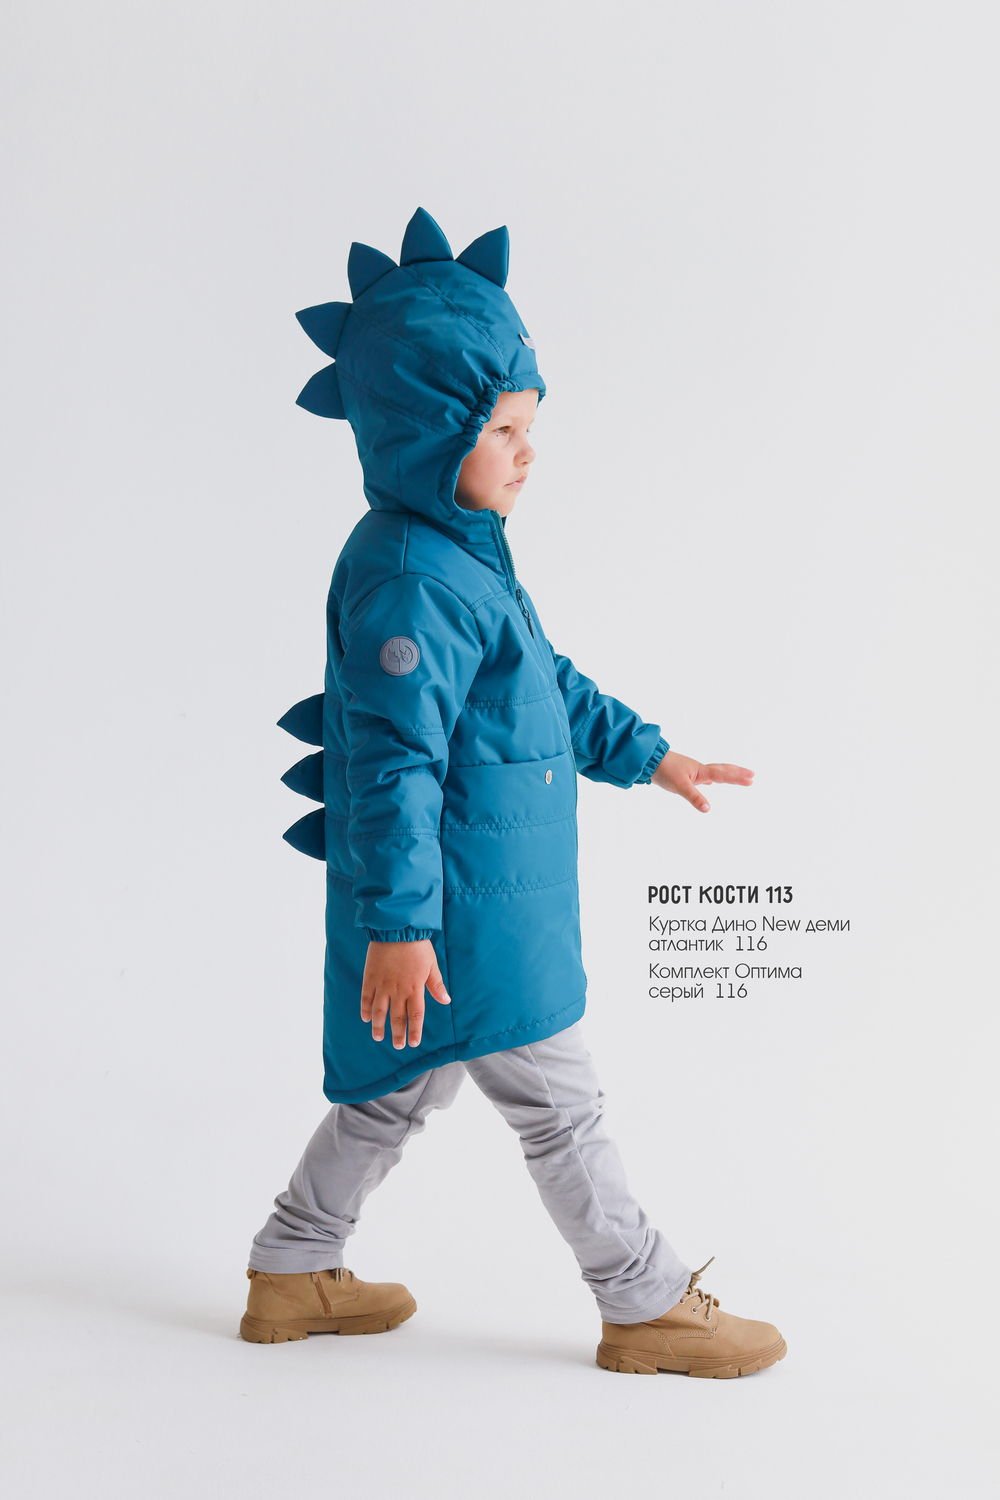 Куртка детская Minidino В-К-012, атлантик, 86 куртка symbion дино темно серая 92